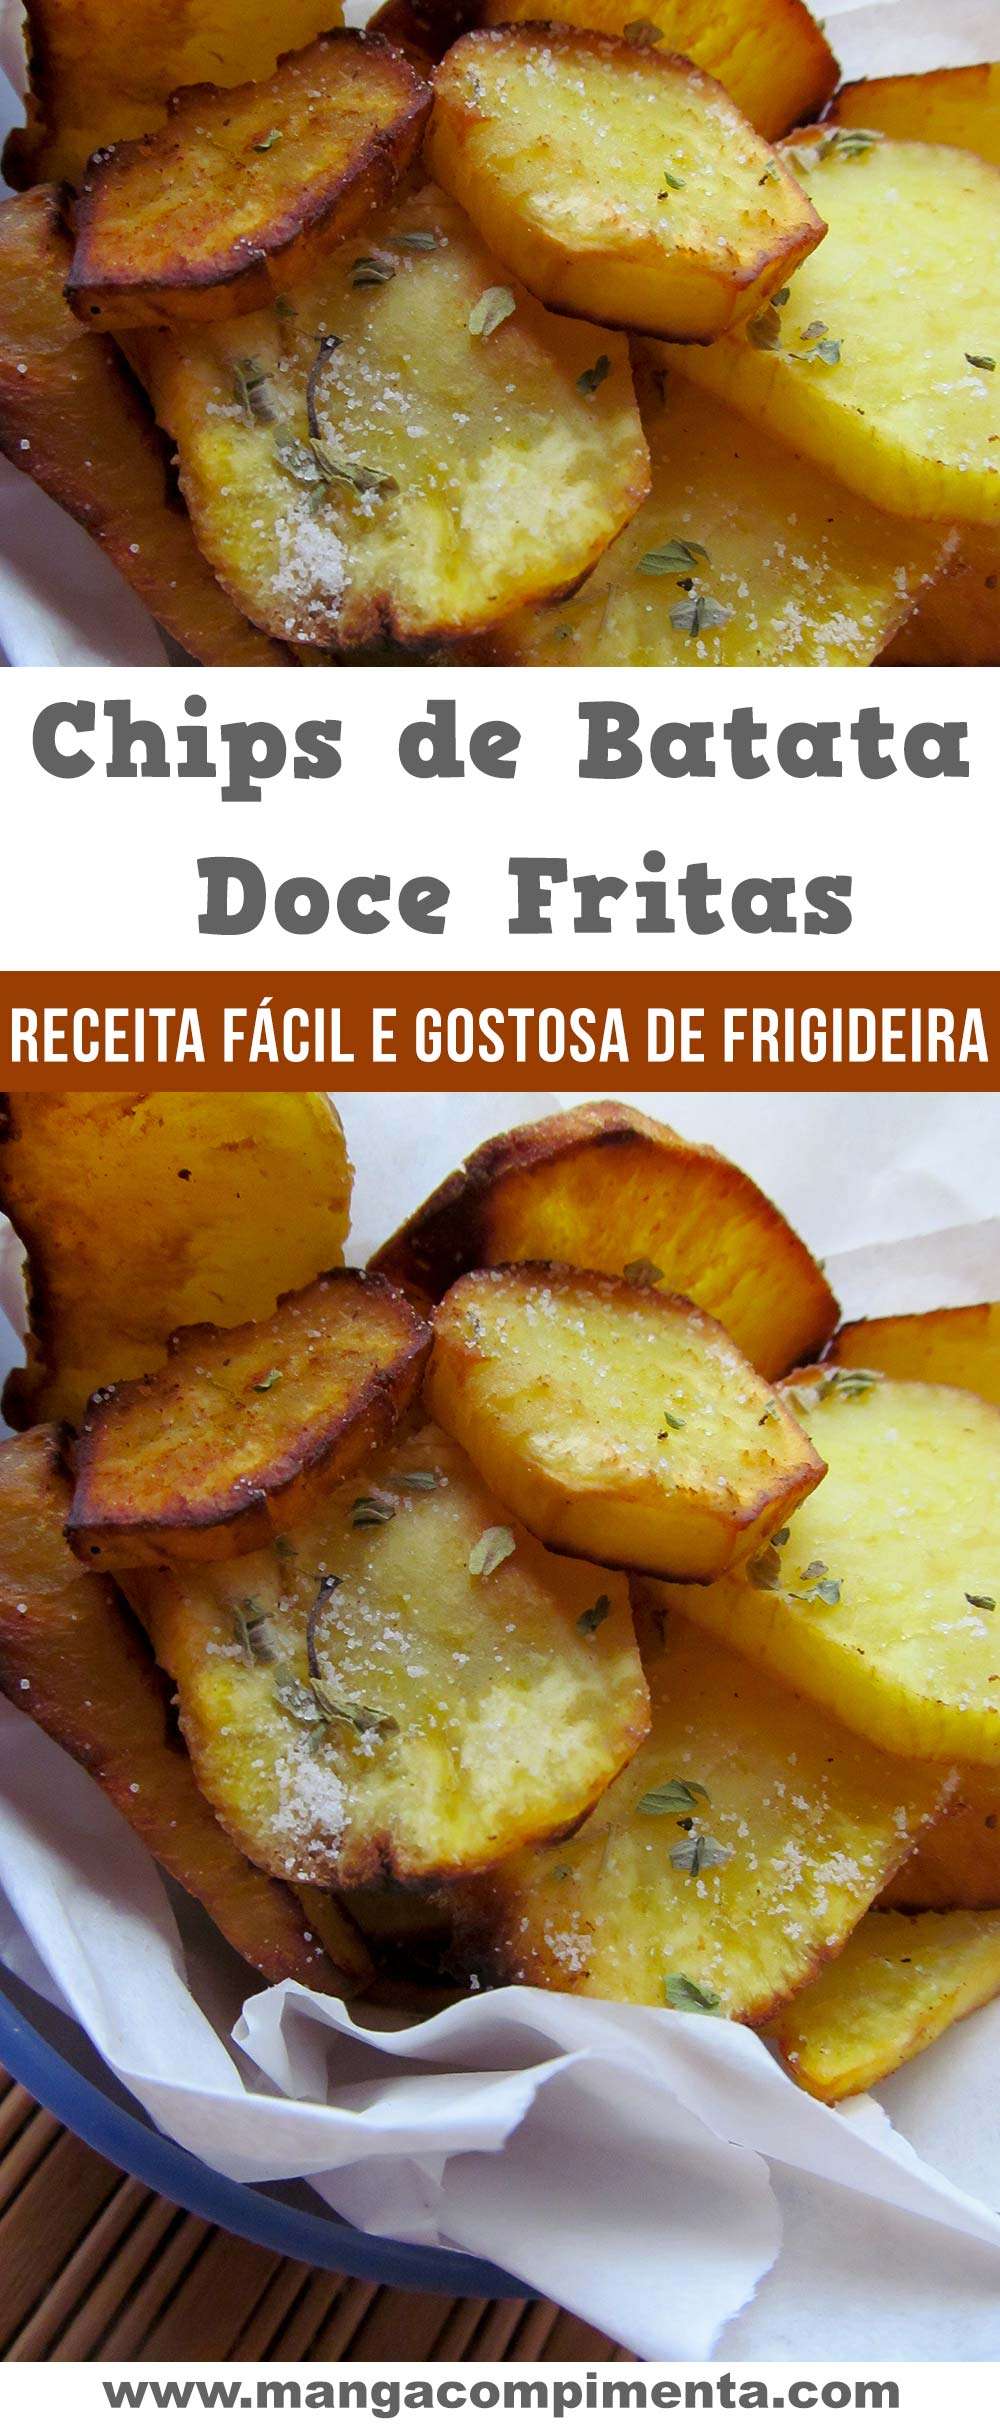 Chips de Batata Doce Frita - Para petiscar com uma bebida gelada!